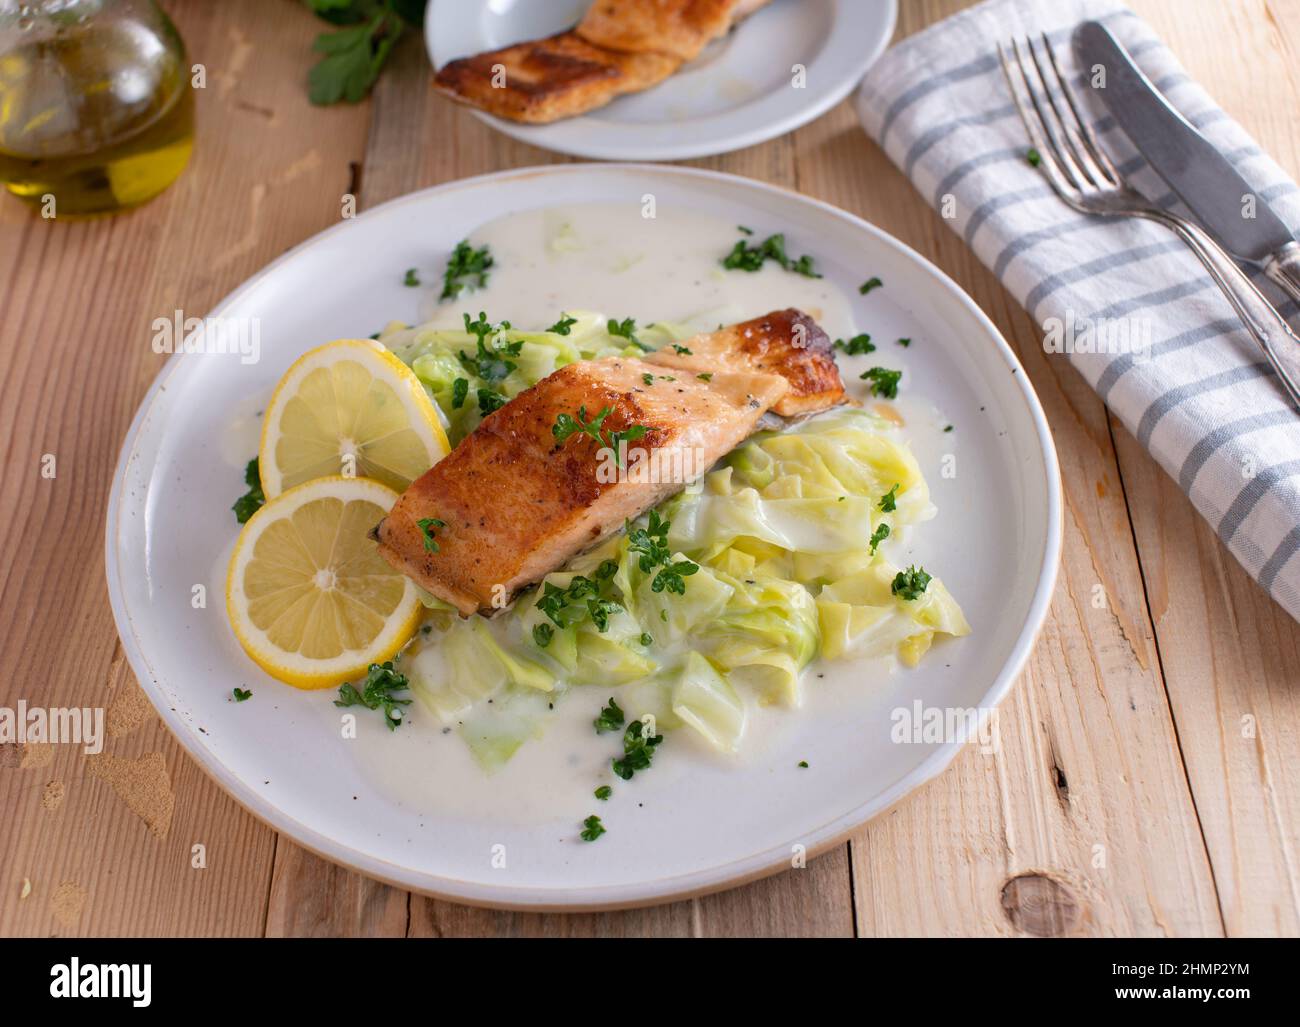 Fischgericht mit Gemüse. Gebratenes Lachsfilet mit Kohl und Bechamelsauce auf einem weißen Teller. Stockfoto